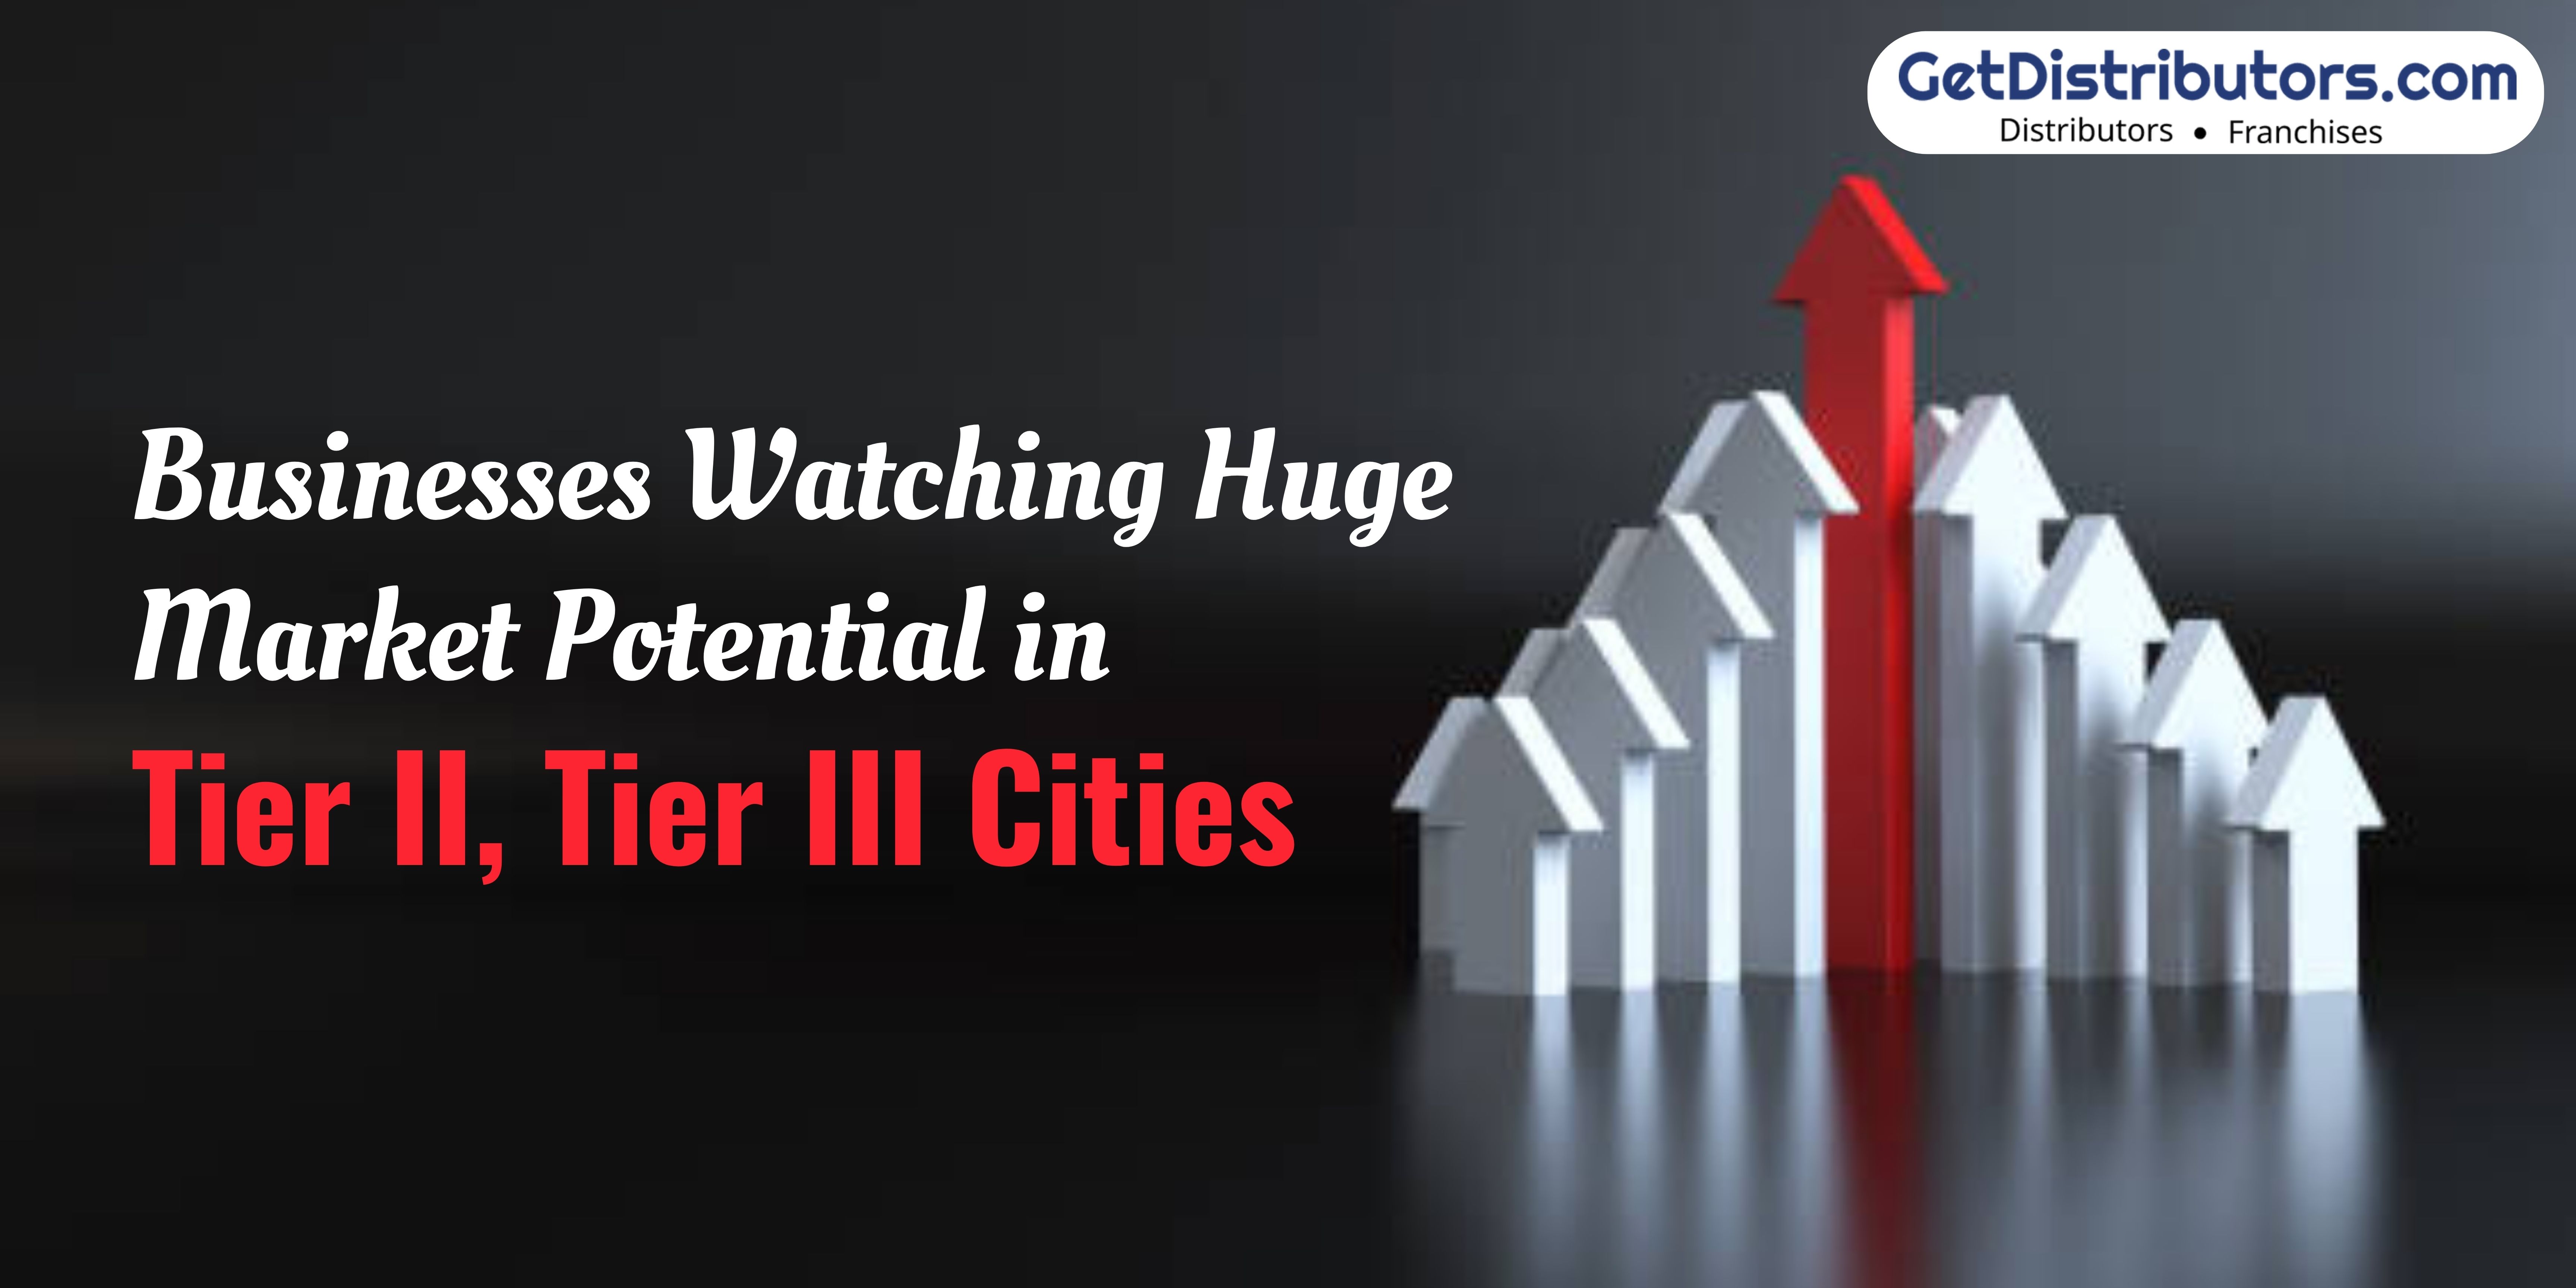 Businesses Watching Huge Market Potential in Tier II, Tier III Cities